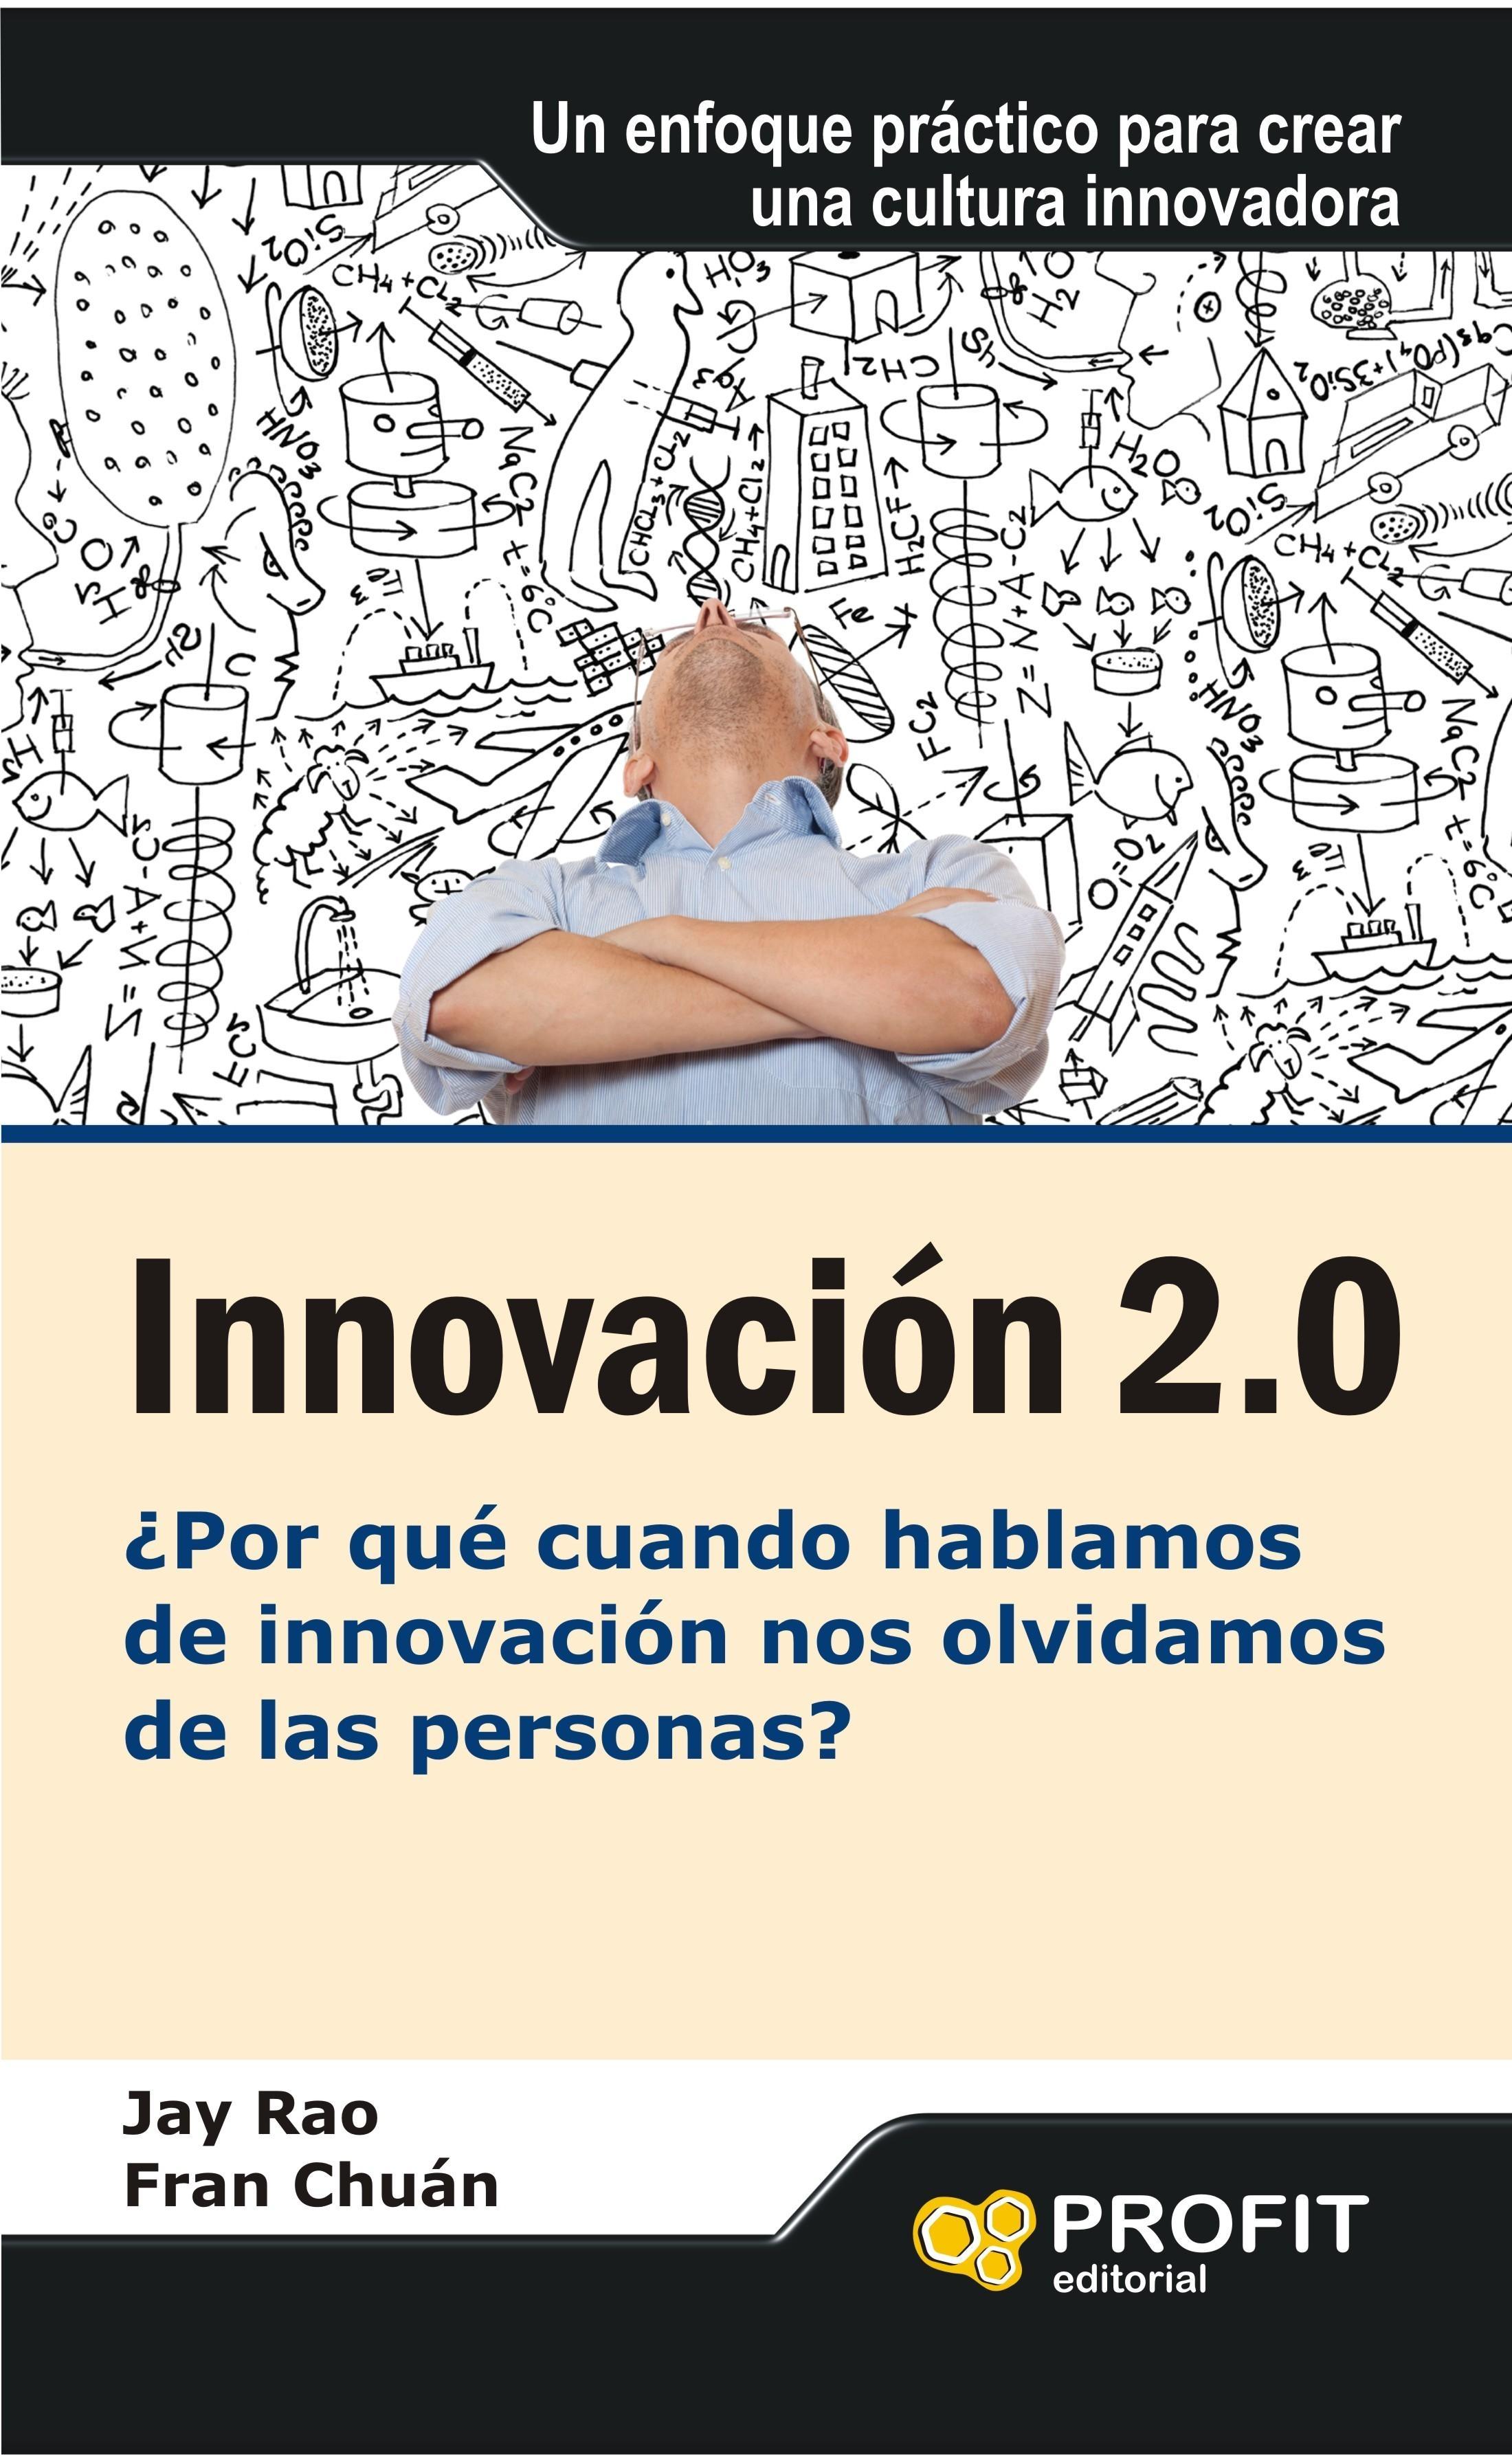 Innovación 2.0 "¿Por qué cuando hablamos de innovación nos olvidamos de las pers"